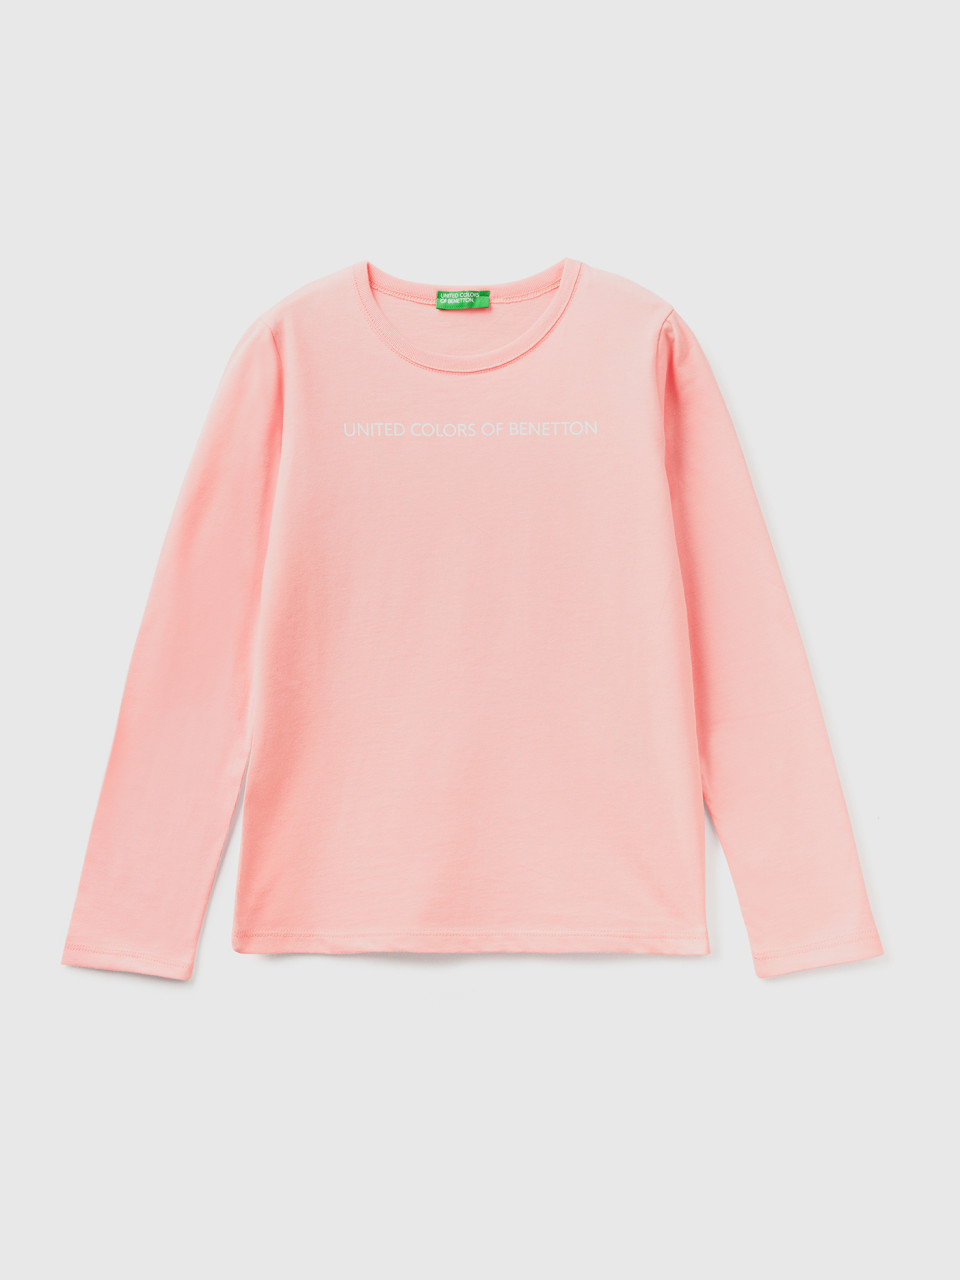 Benetton, Long Sleeve 100% Cotton T-shirt, Pink, Kids